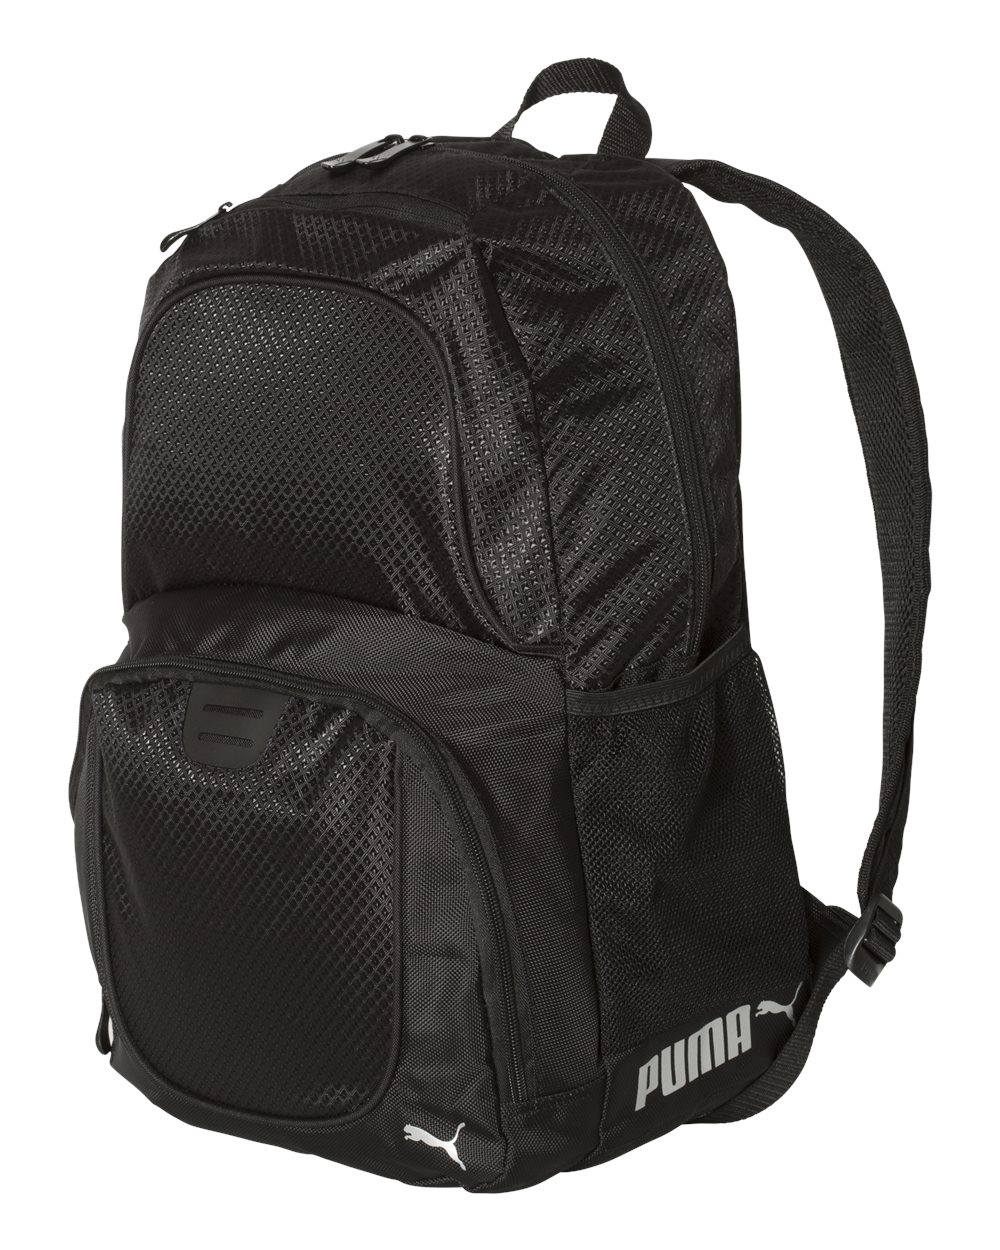 Puma PSC1028 - 25L Backpack $19.99 - Bags